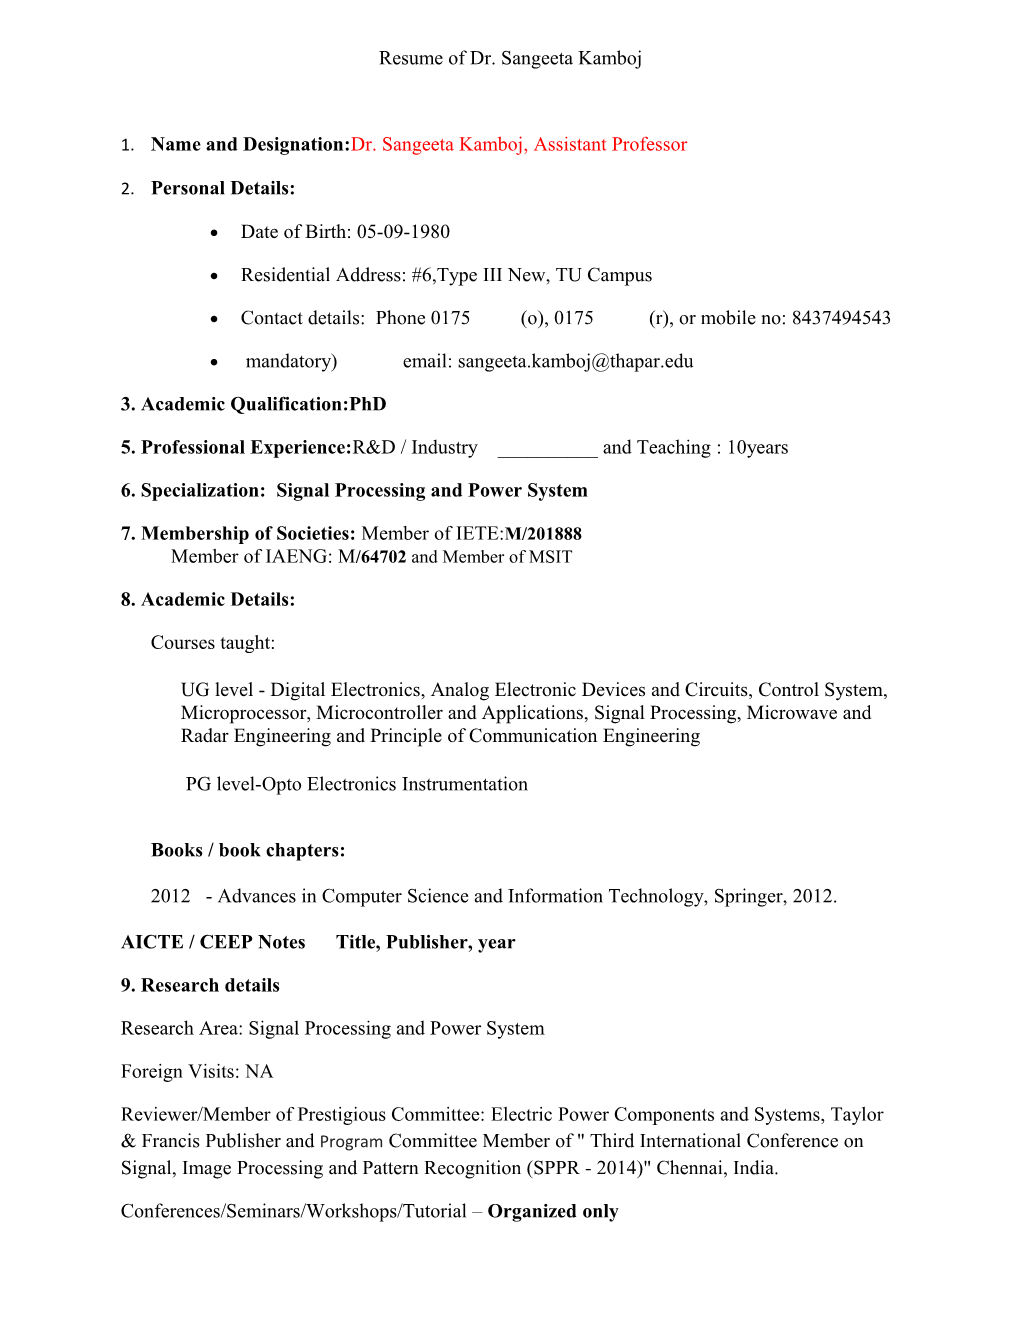 Resume of Dr. Sangeetakamboj